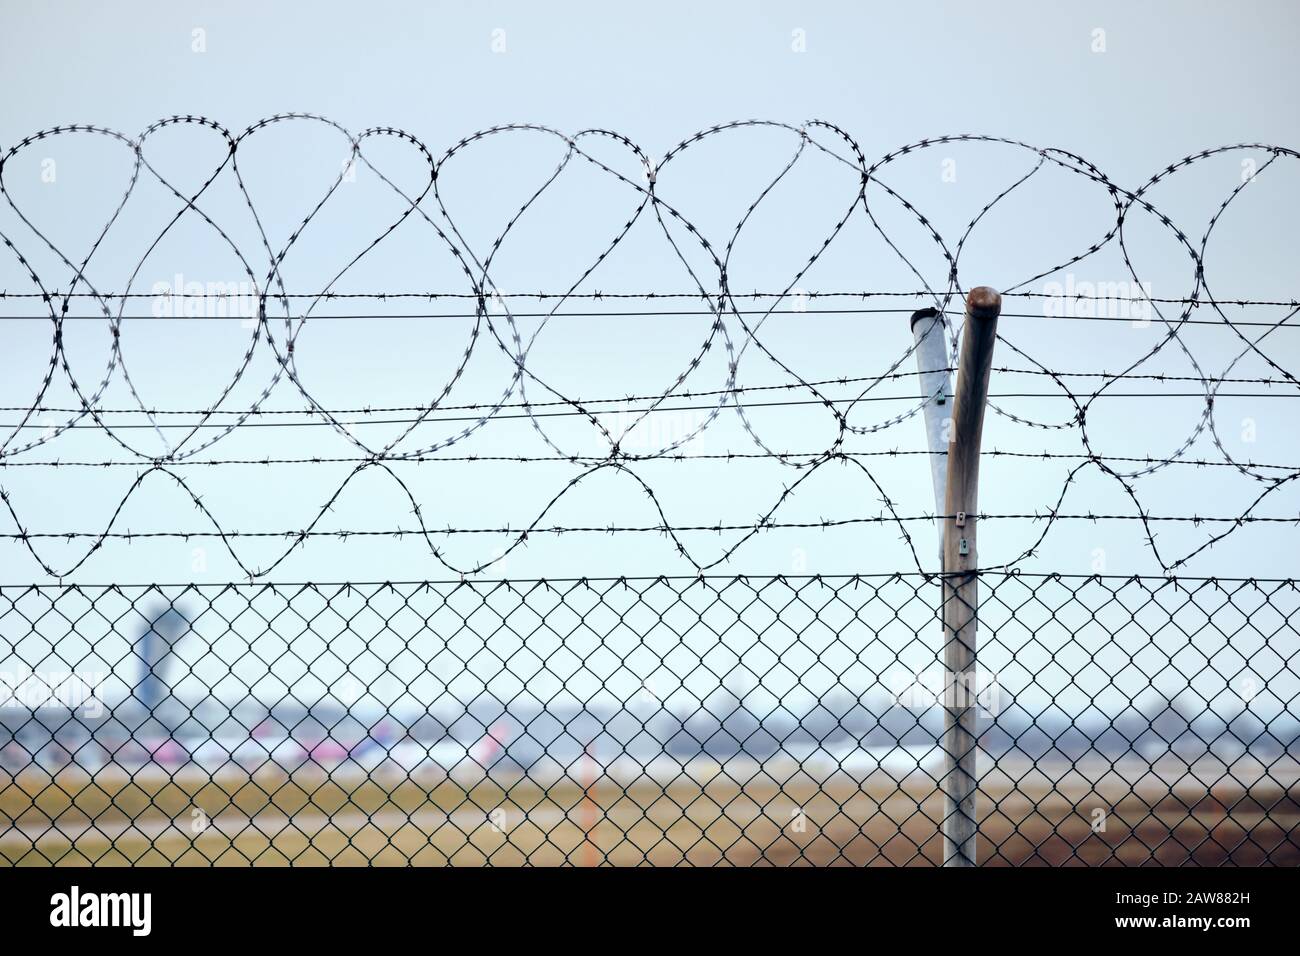 Alto collegamento a catena recinzione con filo spinato in cima a proteggere un aeroporto. Foto Stock